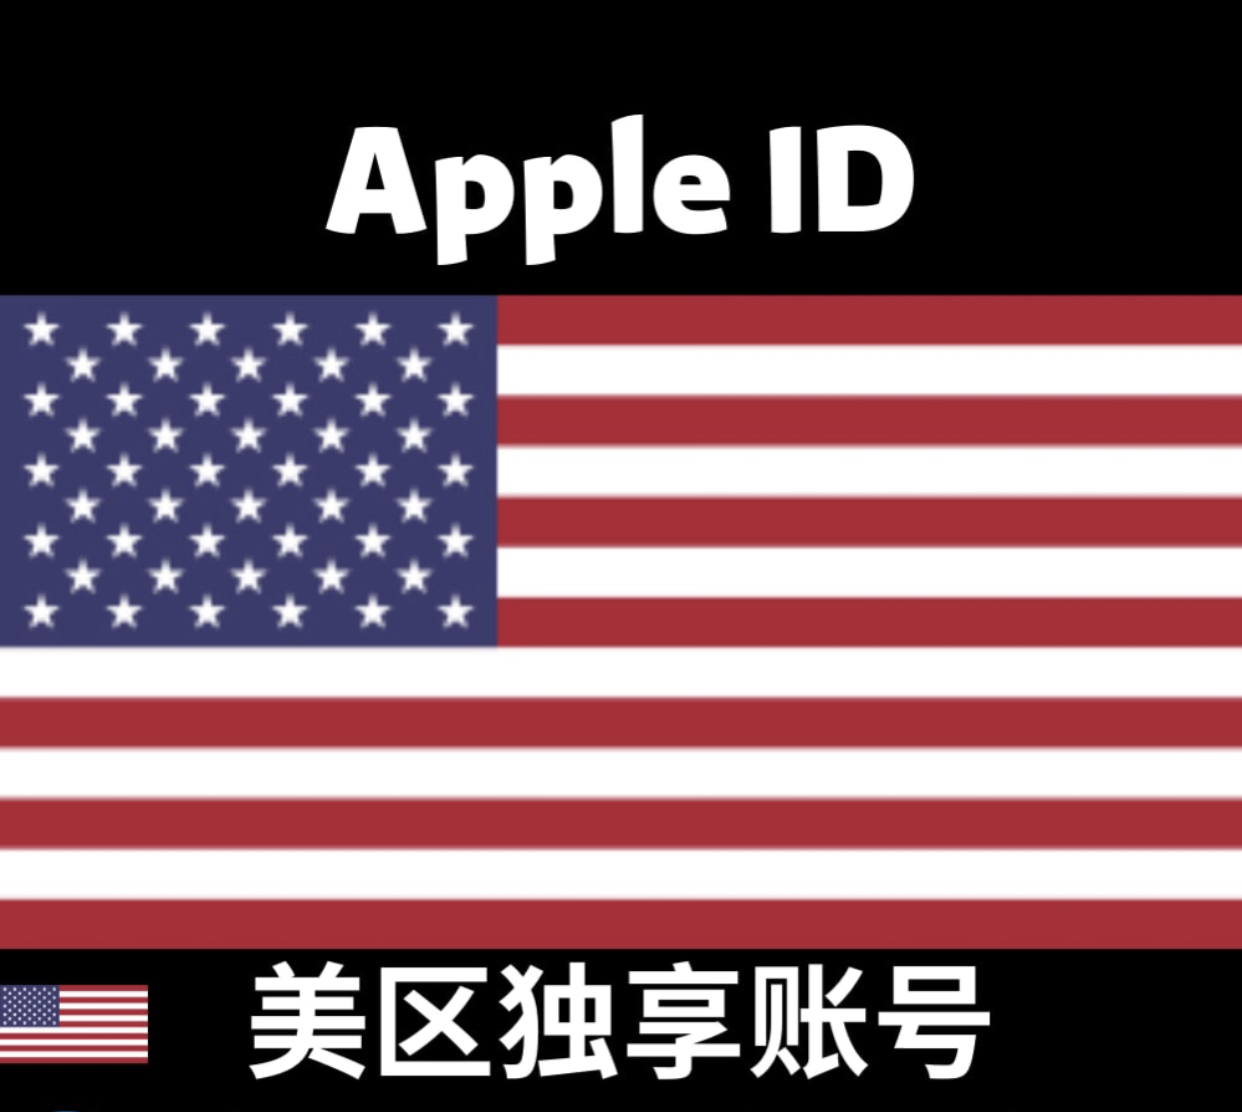 苹果ID专卖销售店